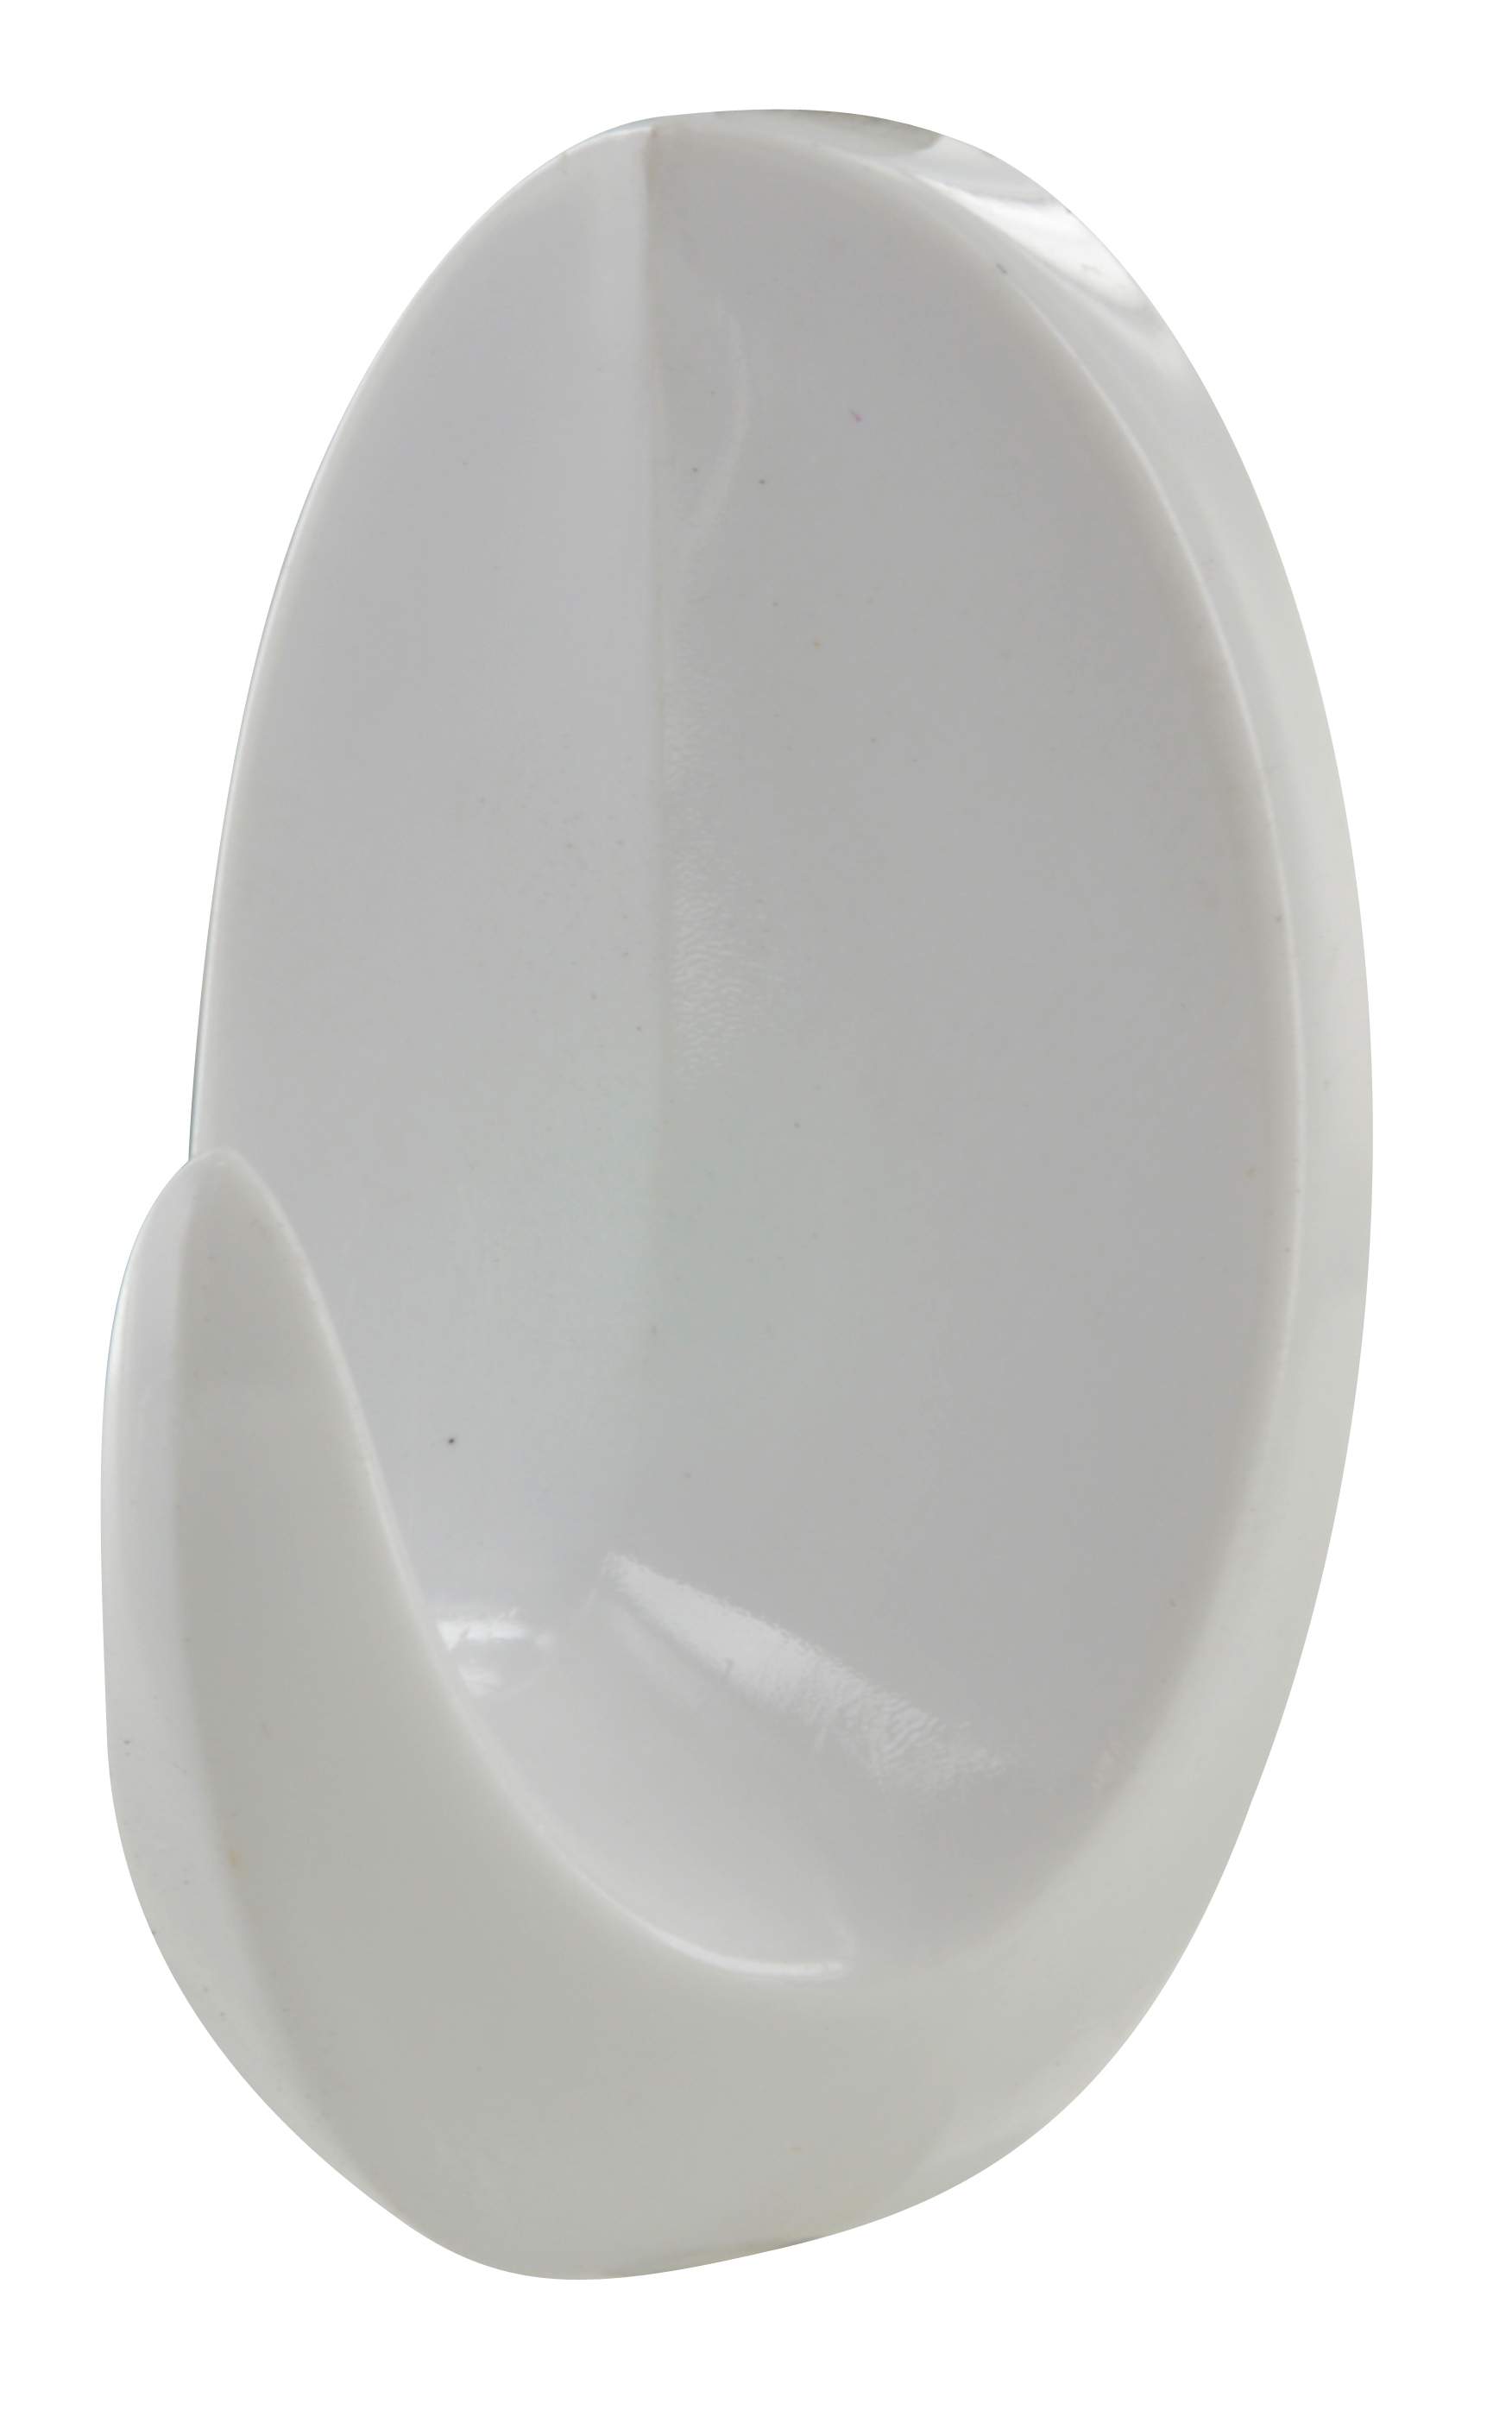 Gancio decorativo adesivo, goccia H.55mm, L.34mm, plastica bianca, 2 pezzi.